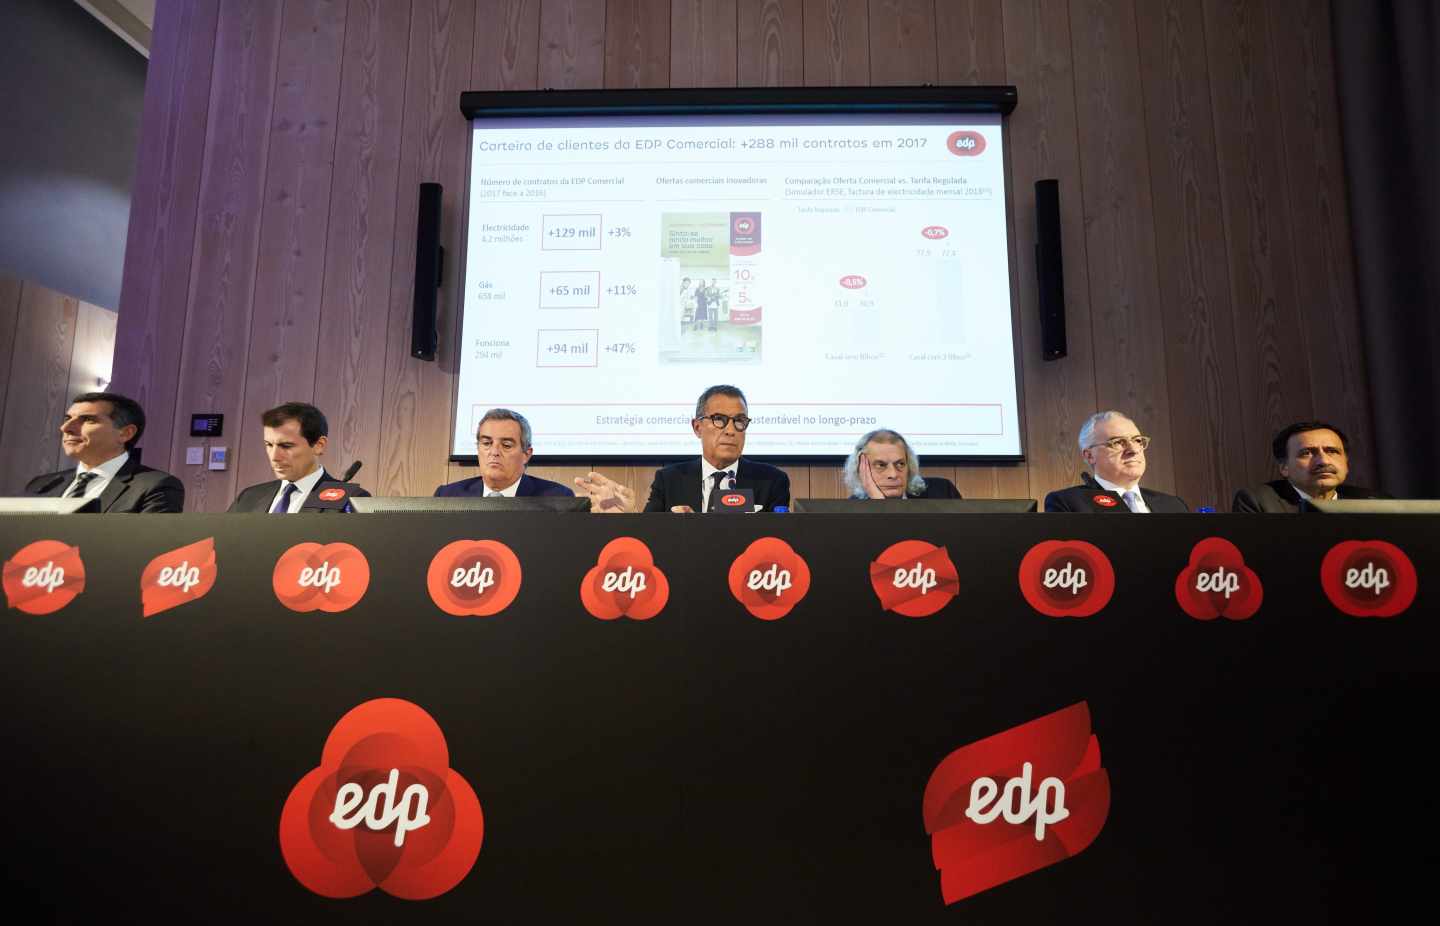 El presidente de EDP, Antonio Mexia, y la cúpula de la eléctrica portuguesa.